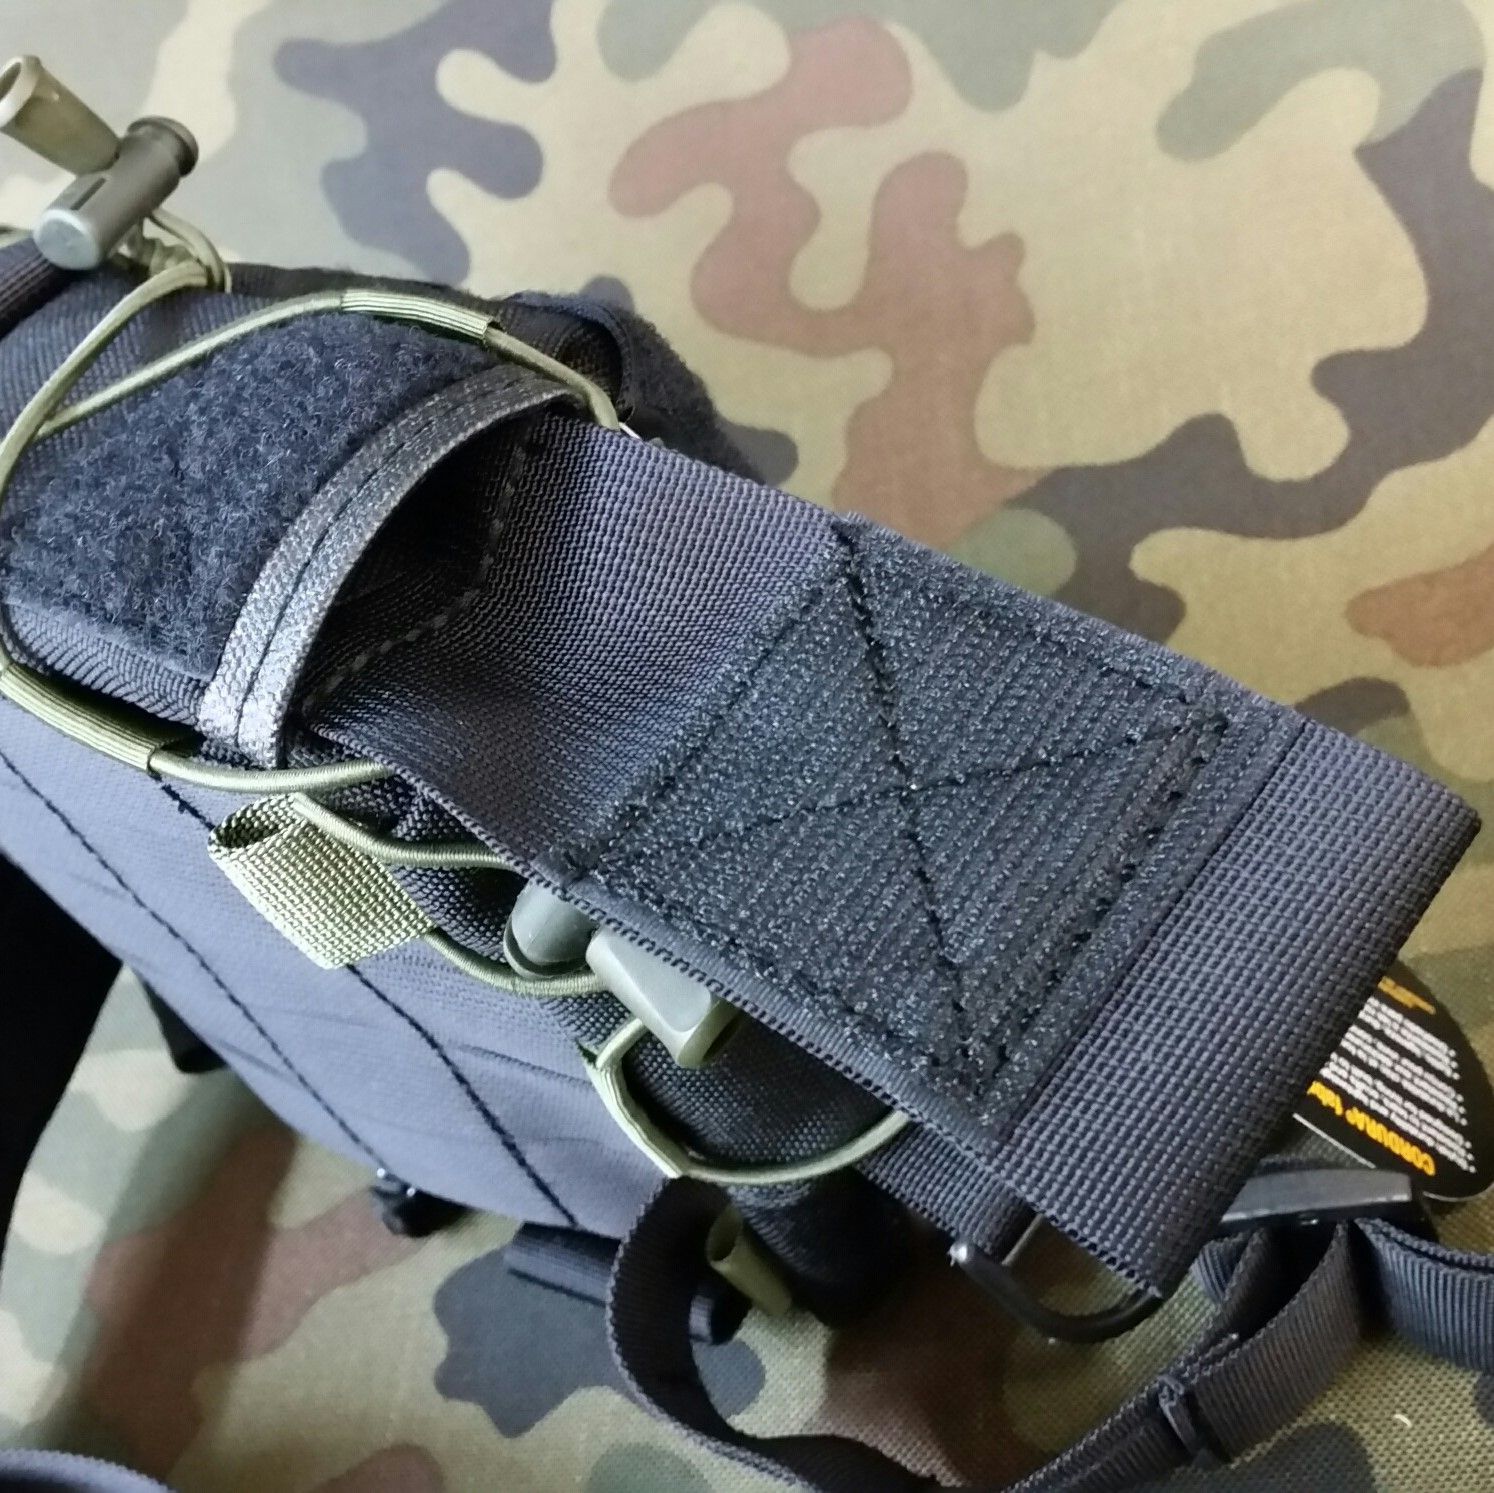 Expandable baton ESP 21" low profile pouch